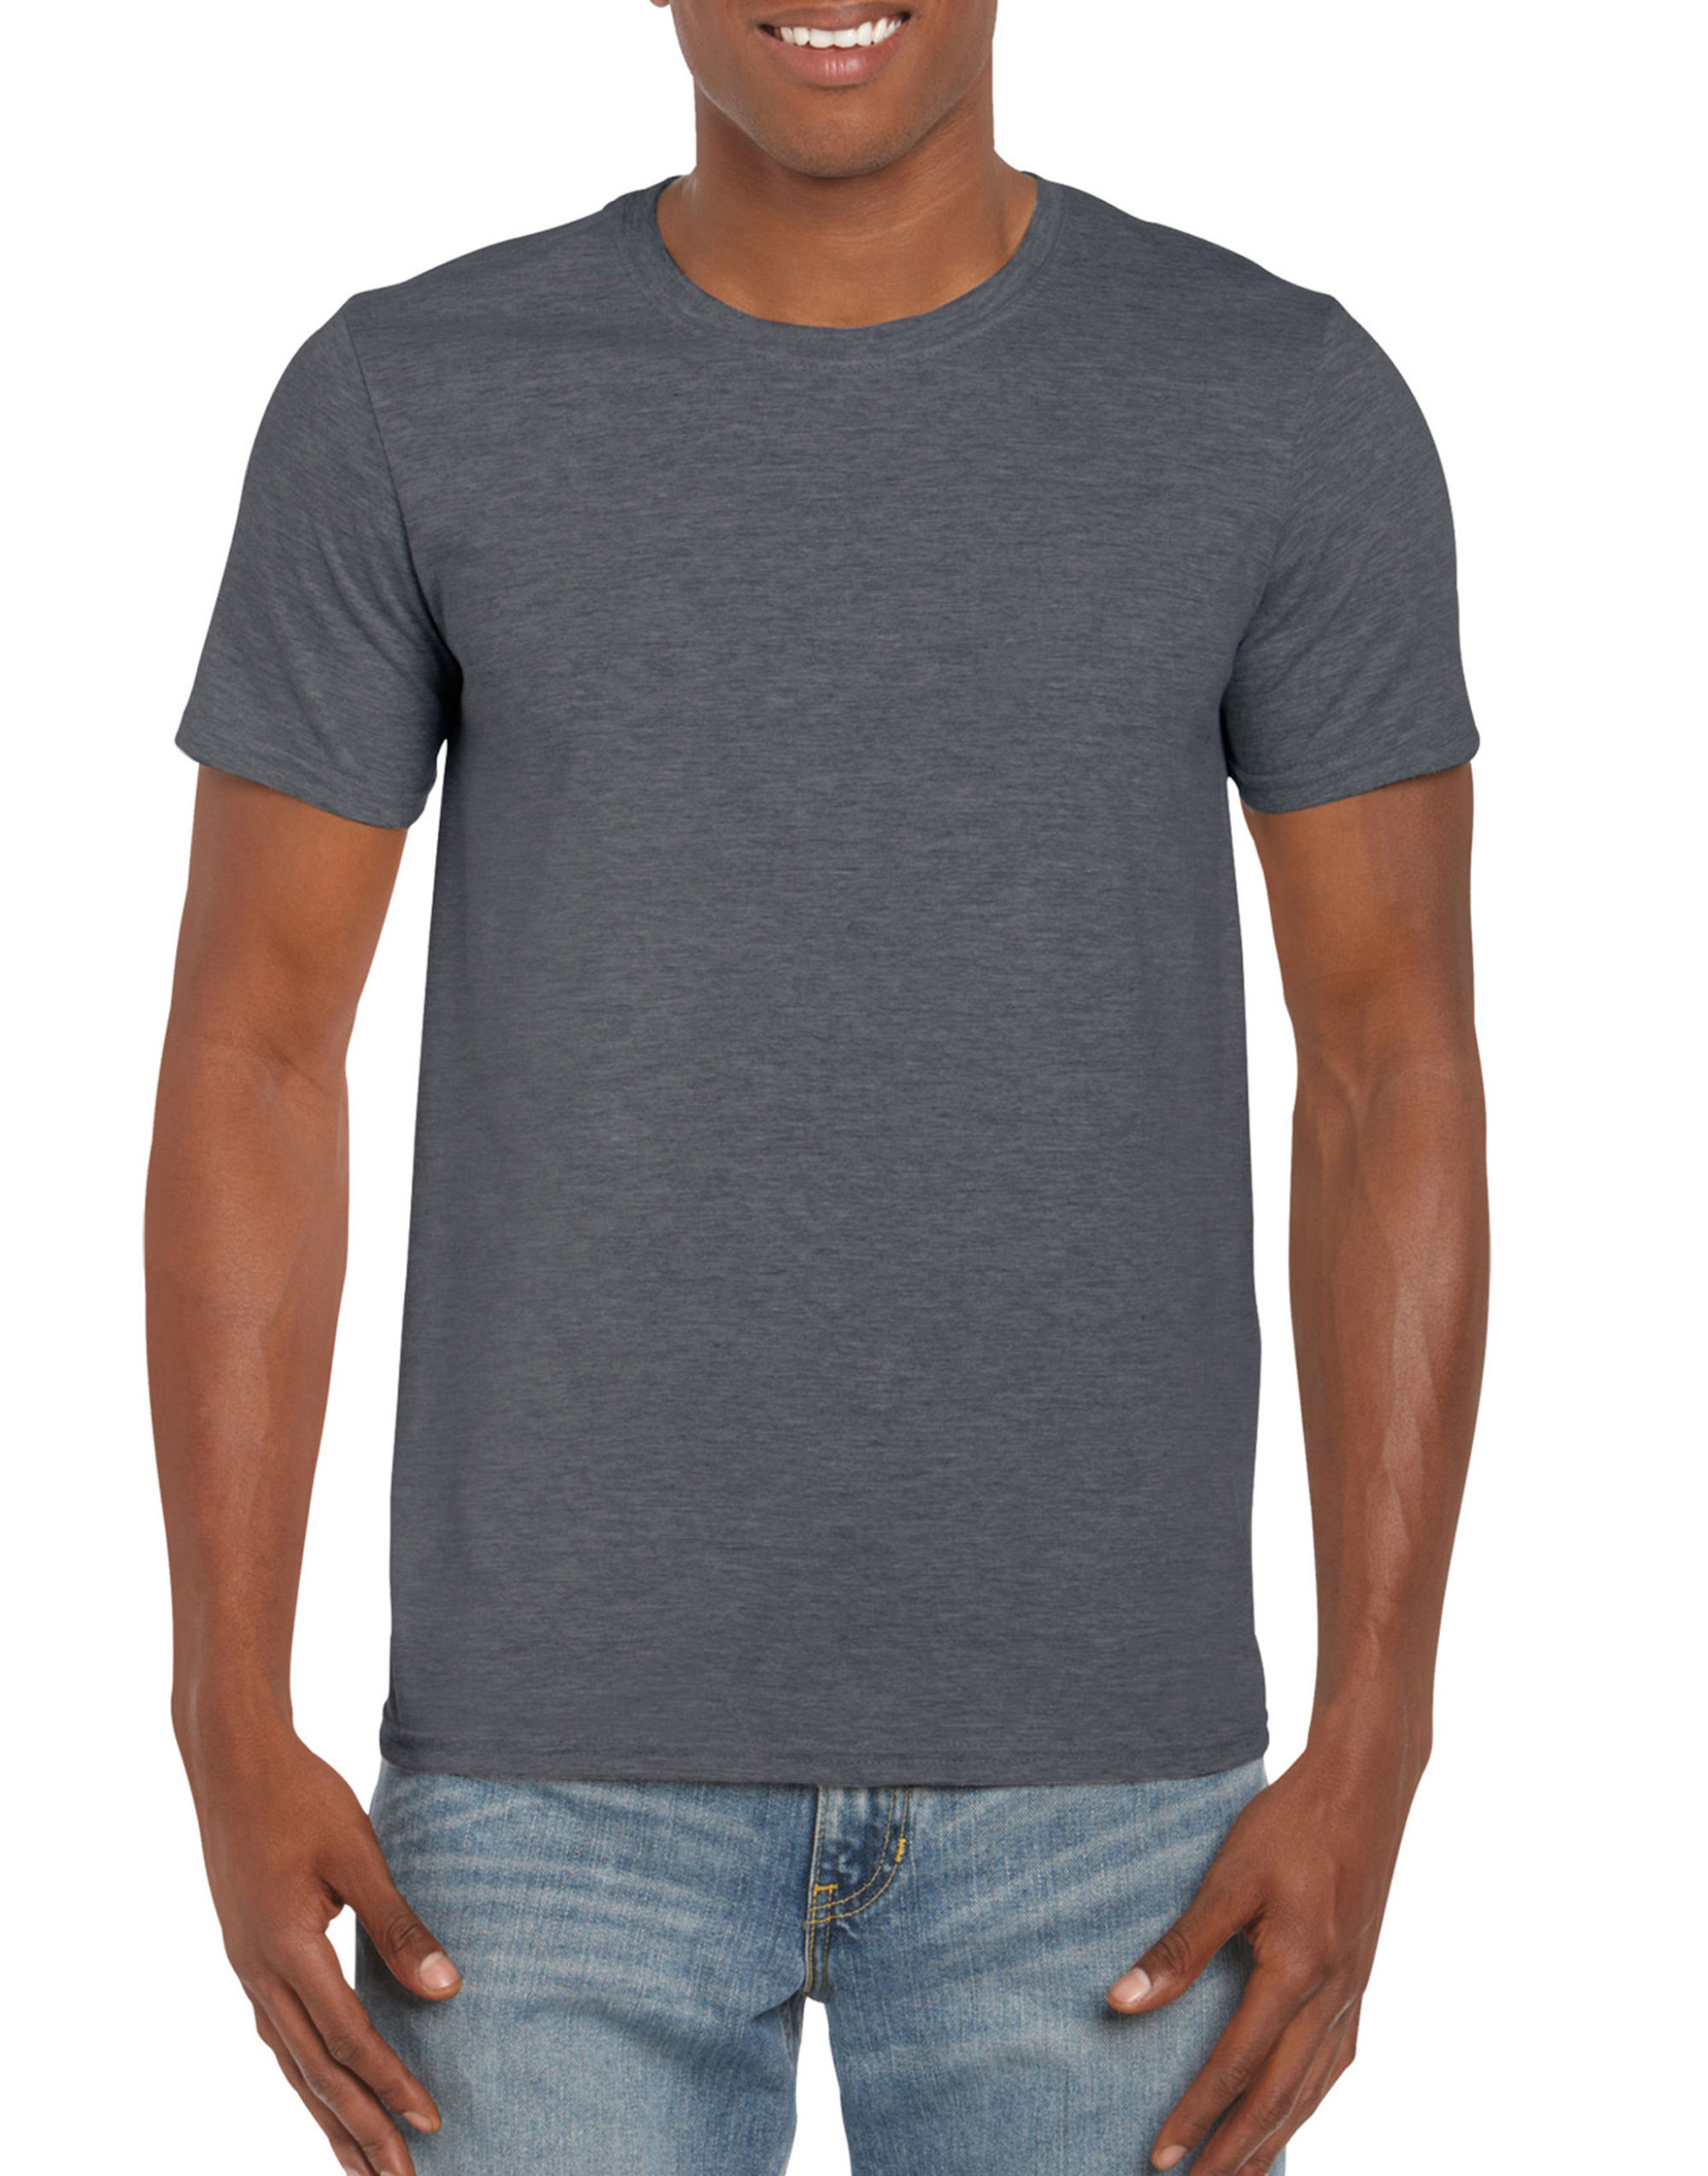 Men's Soft-Style T-Shirt